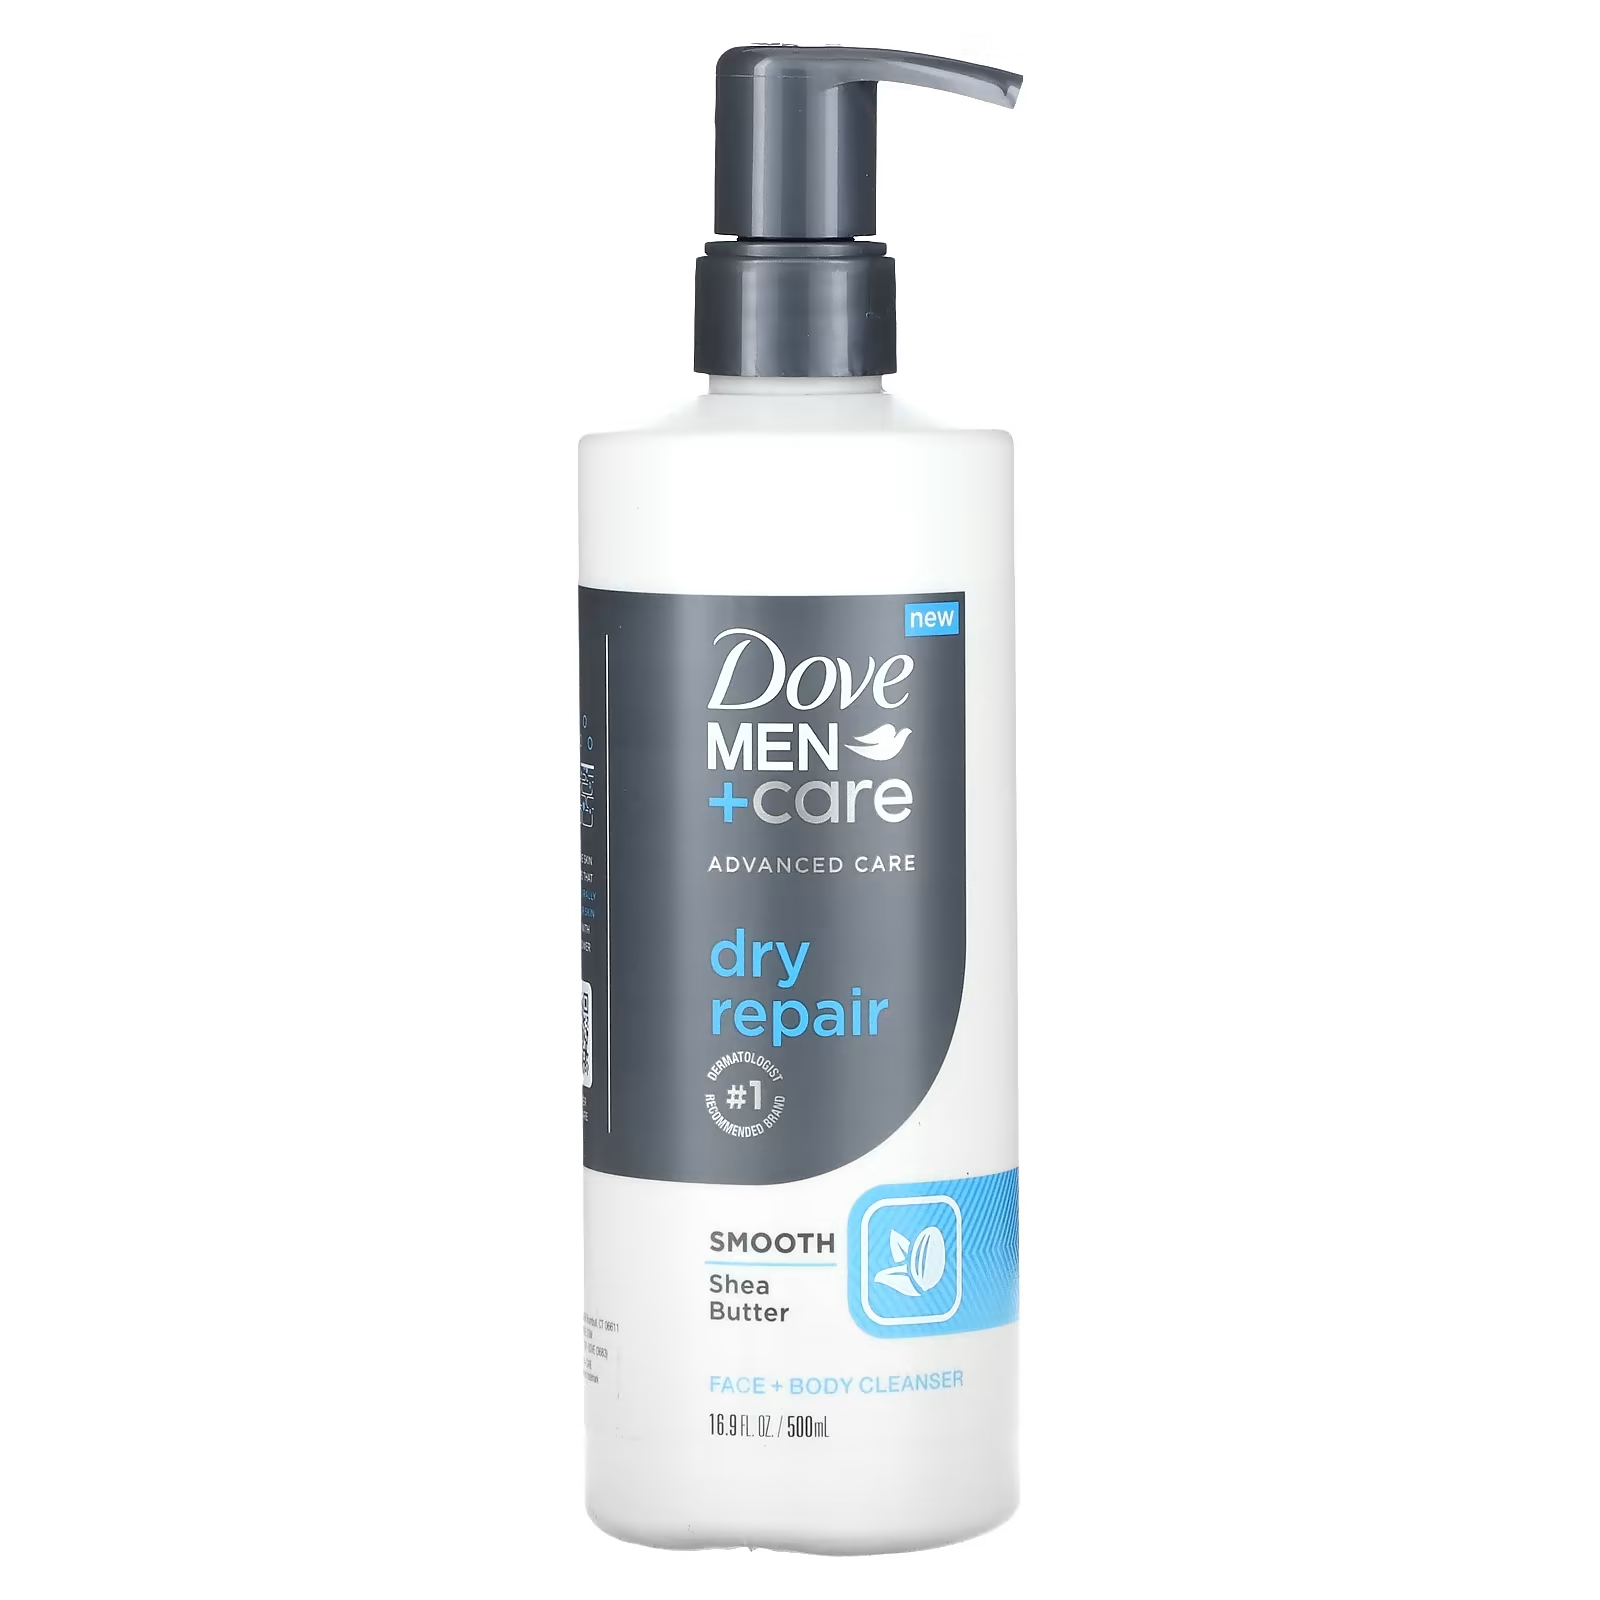 Очищающее средство Dove Men+Care для лица и тела dove men care мыло для тела и лица свежесть 75 г 2 6 унции